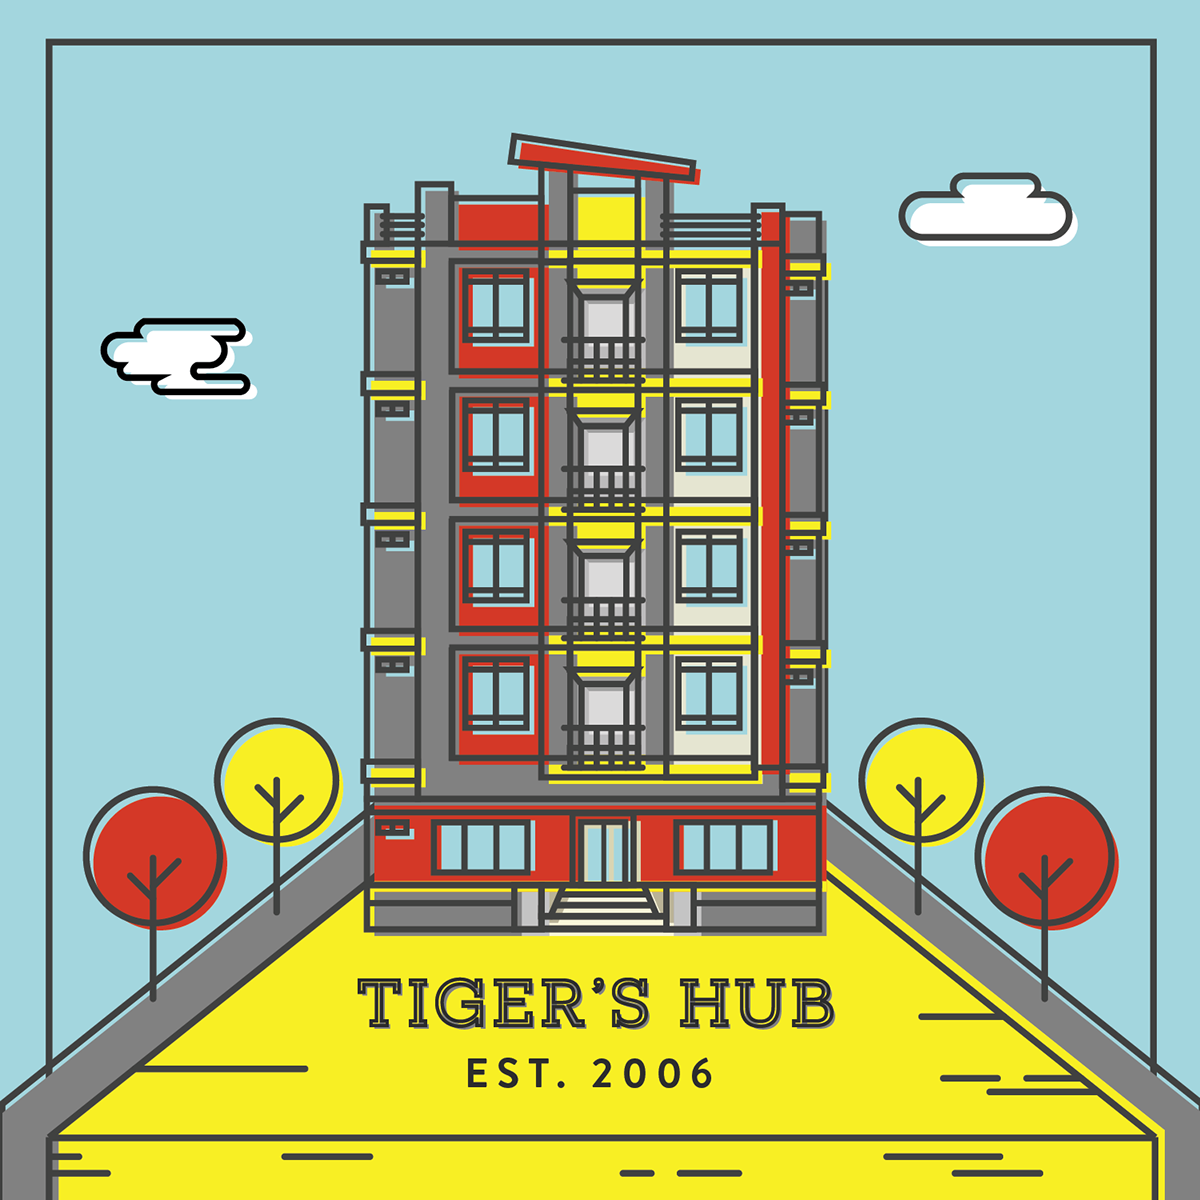 Tiger's Hub Dormitory apartment building